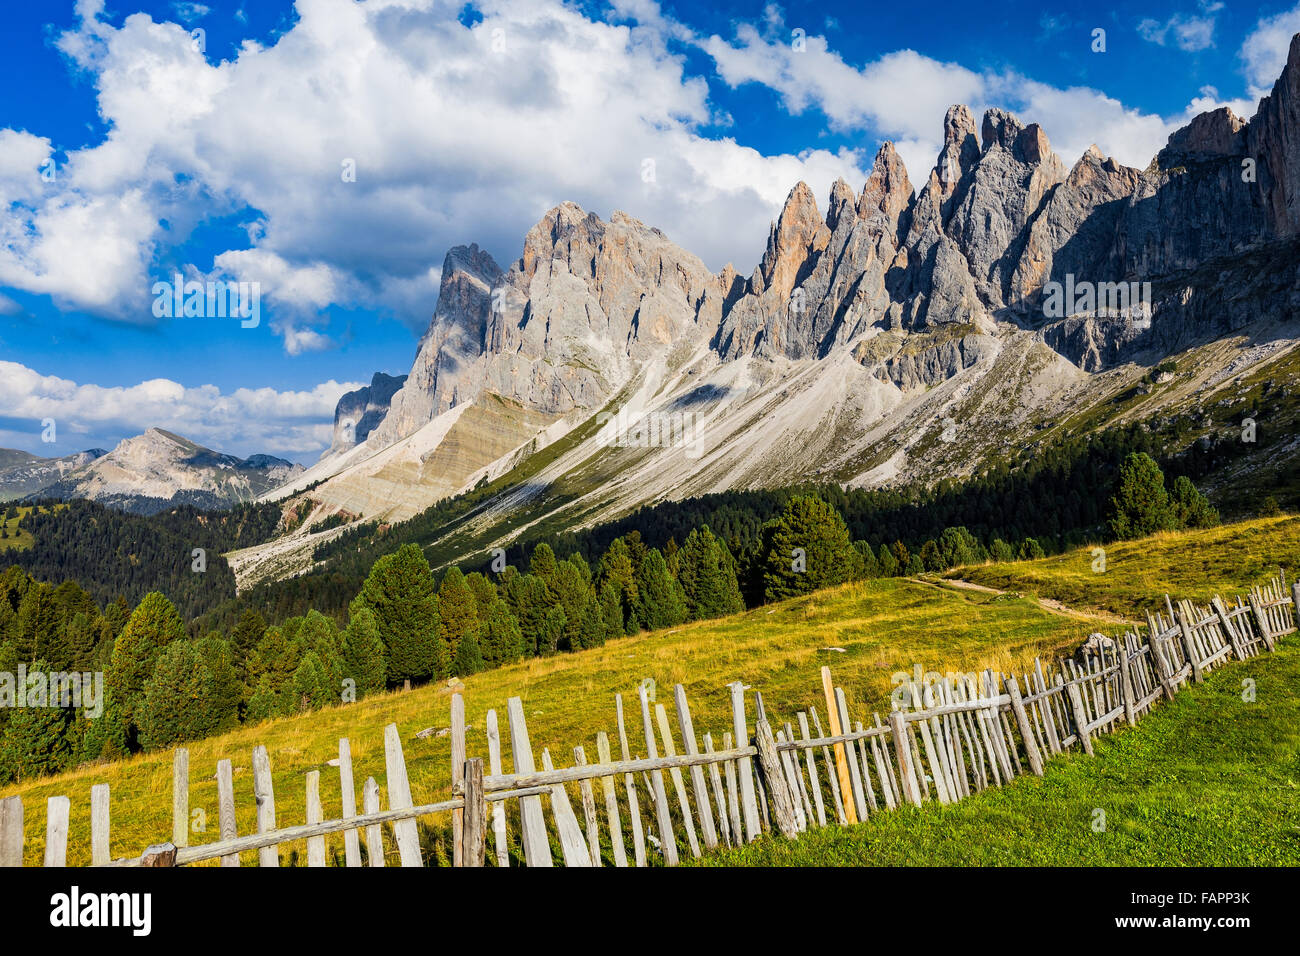 Le Odle gruppo montuoso. Praterie Alpine, recinti di legno. Val di Funes, la Val Gardena Dolomiti Alto Adige Südtirol, Alpi Italiane. L'Europa. Foto Stock